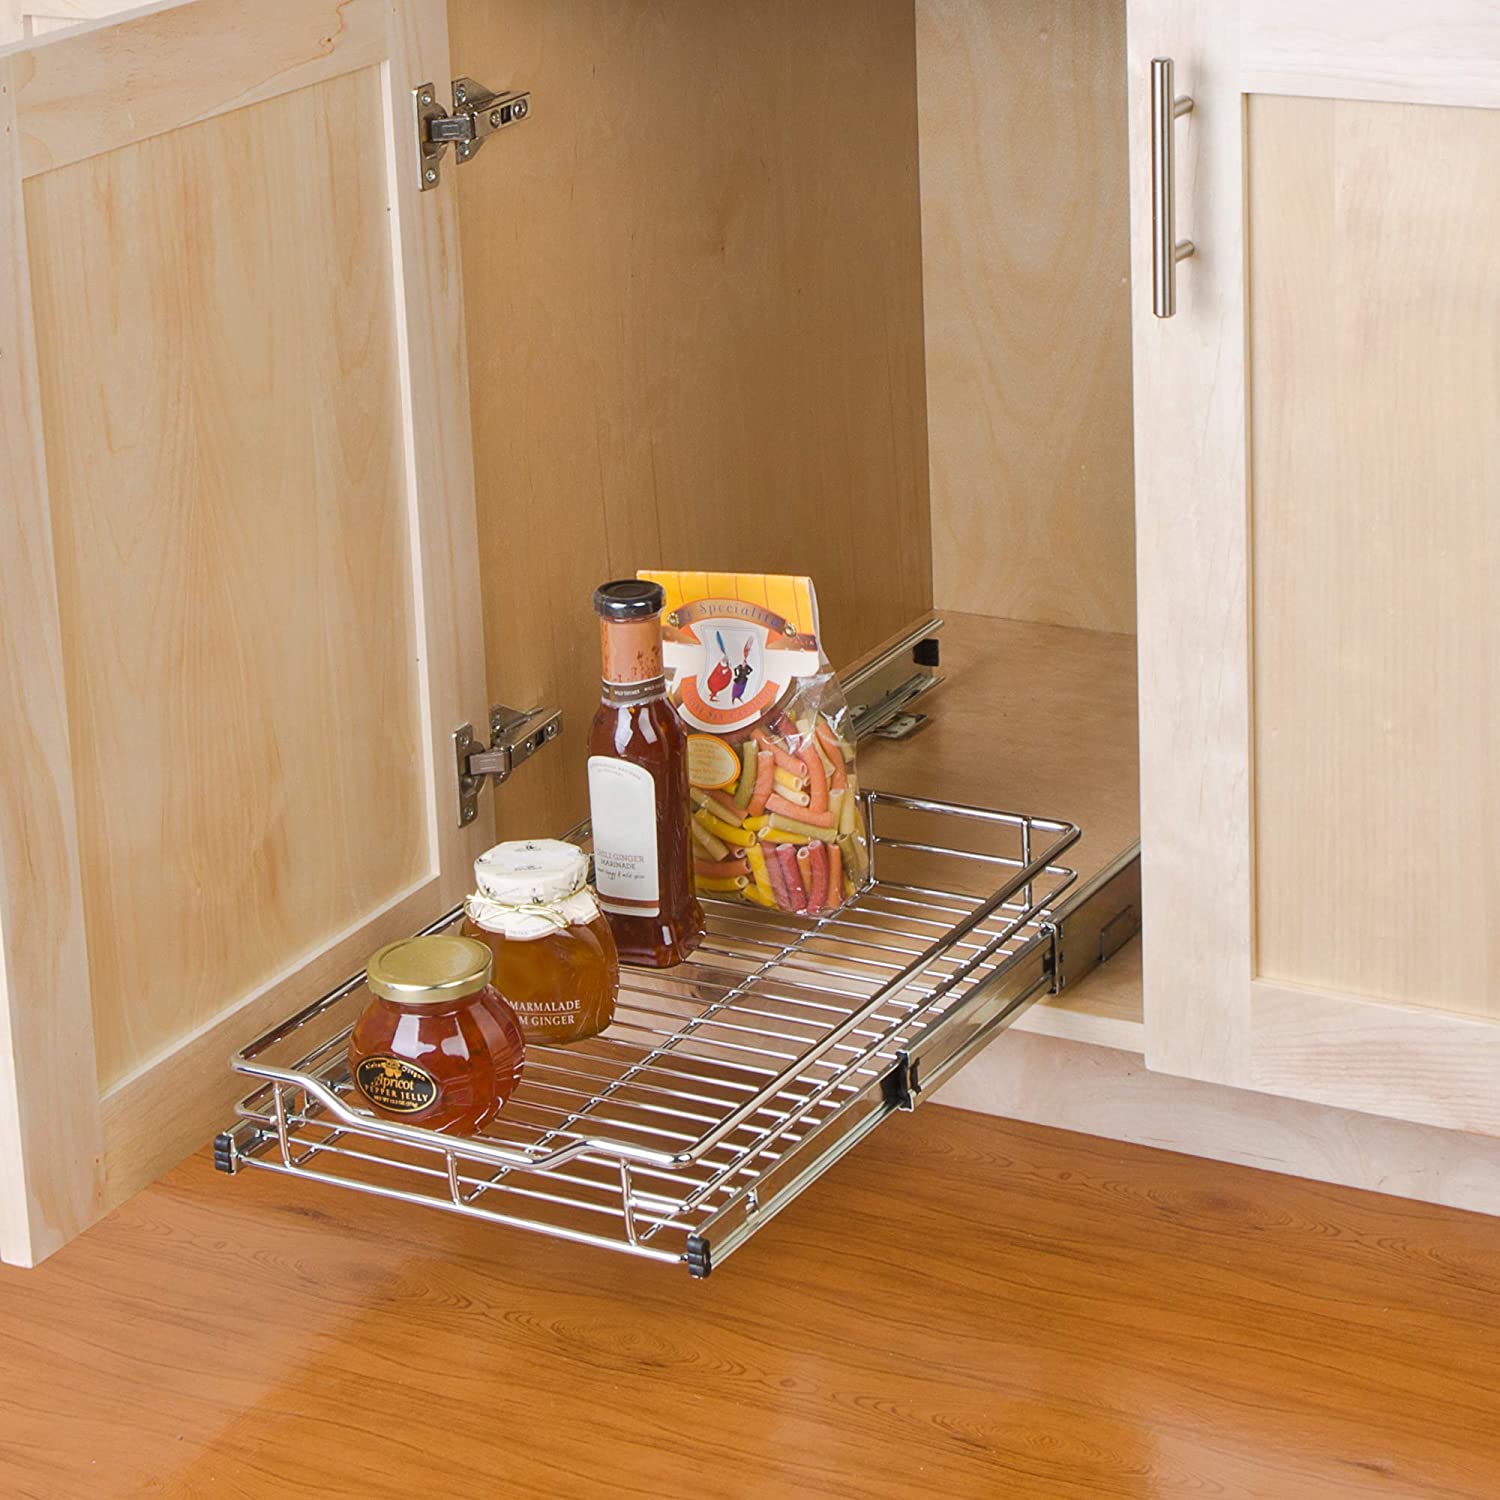 https://www.shopsmartdesign.com/cdn/shop/products/sliding-pull-out-metal-cabinet-shelf-multiple-sizes-smart-design-kitchen-8434290-incrementing-number-824467.jpg?v=1679337174